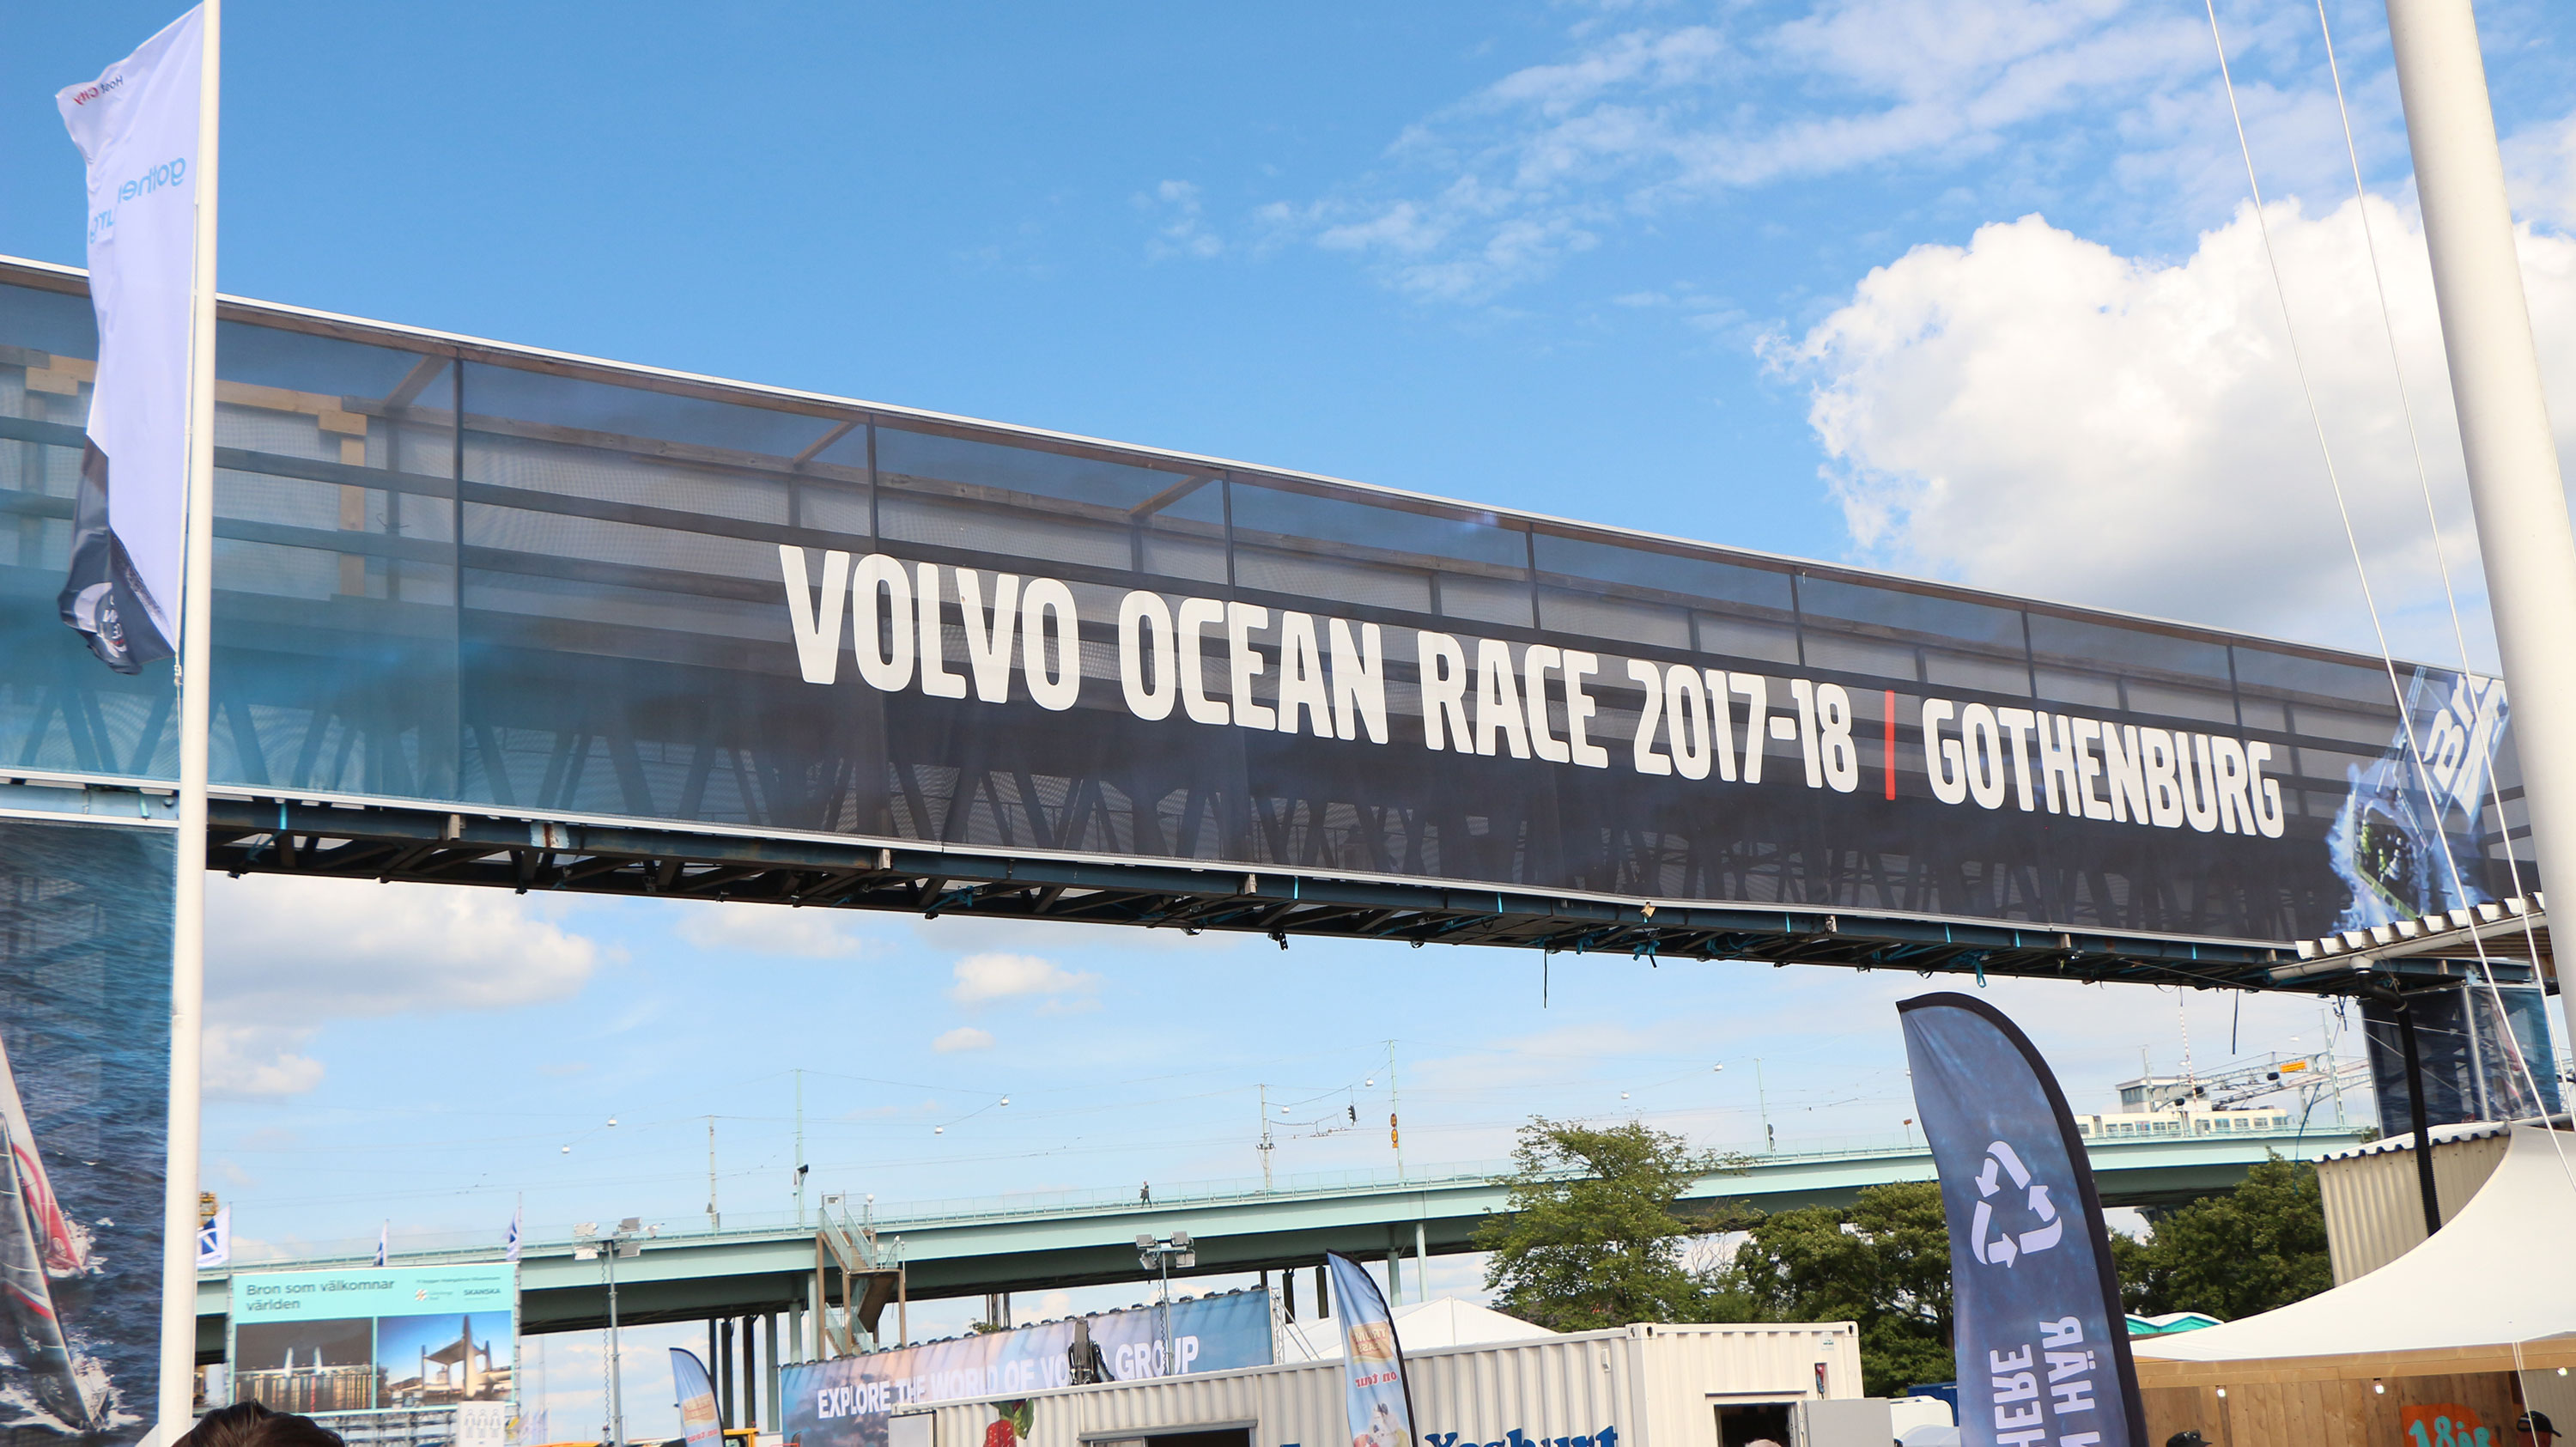 Volvo Ocean race 2017-2018